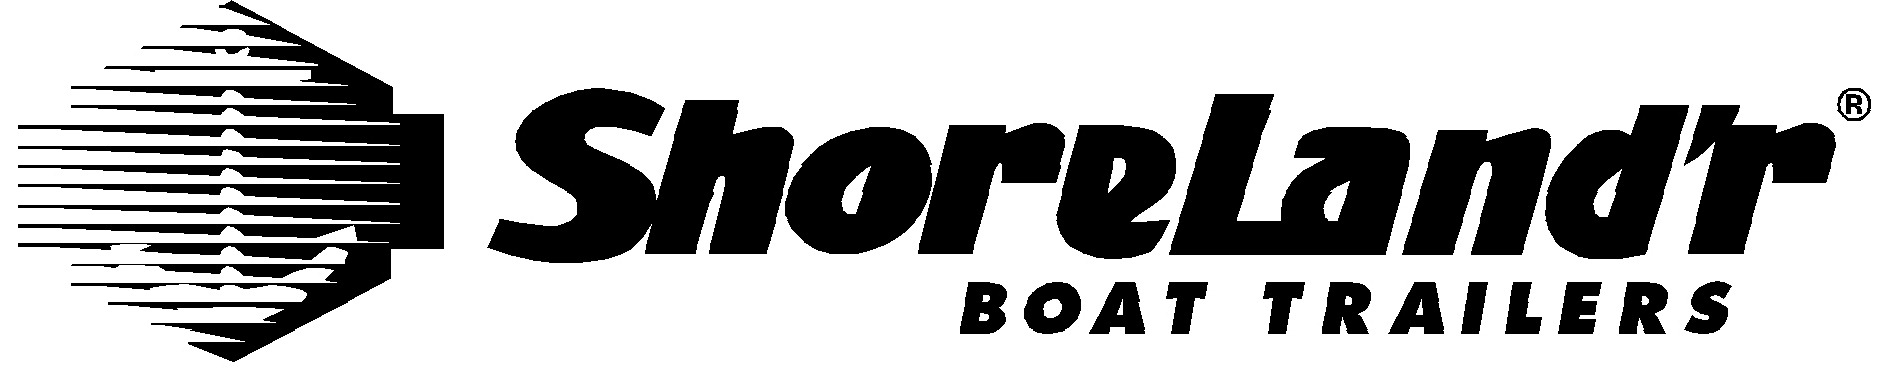 shore landr trailer pontoon boat guides